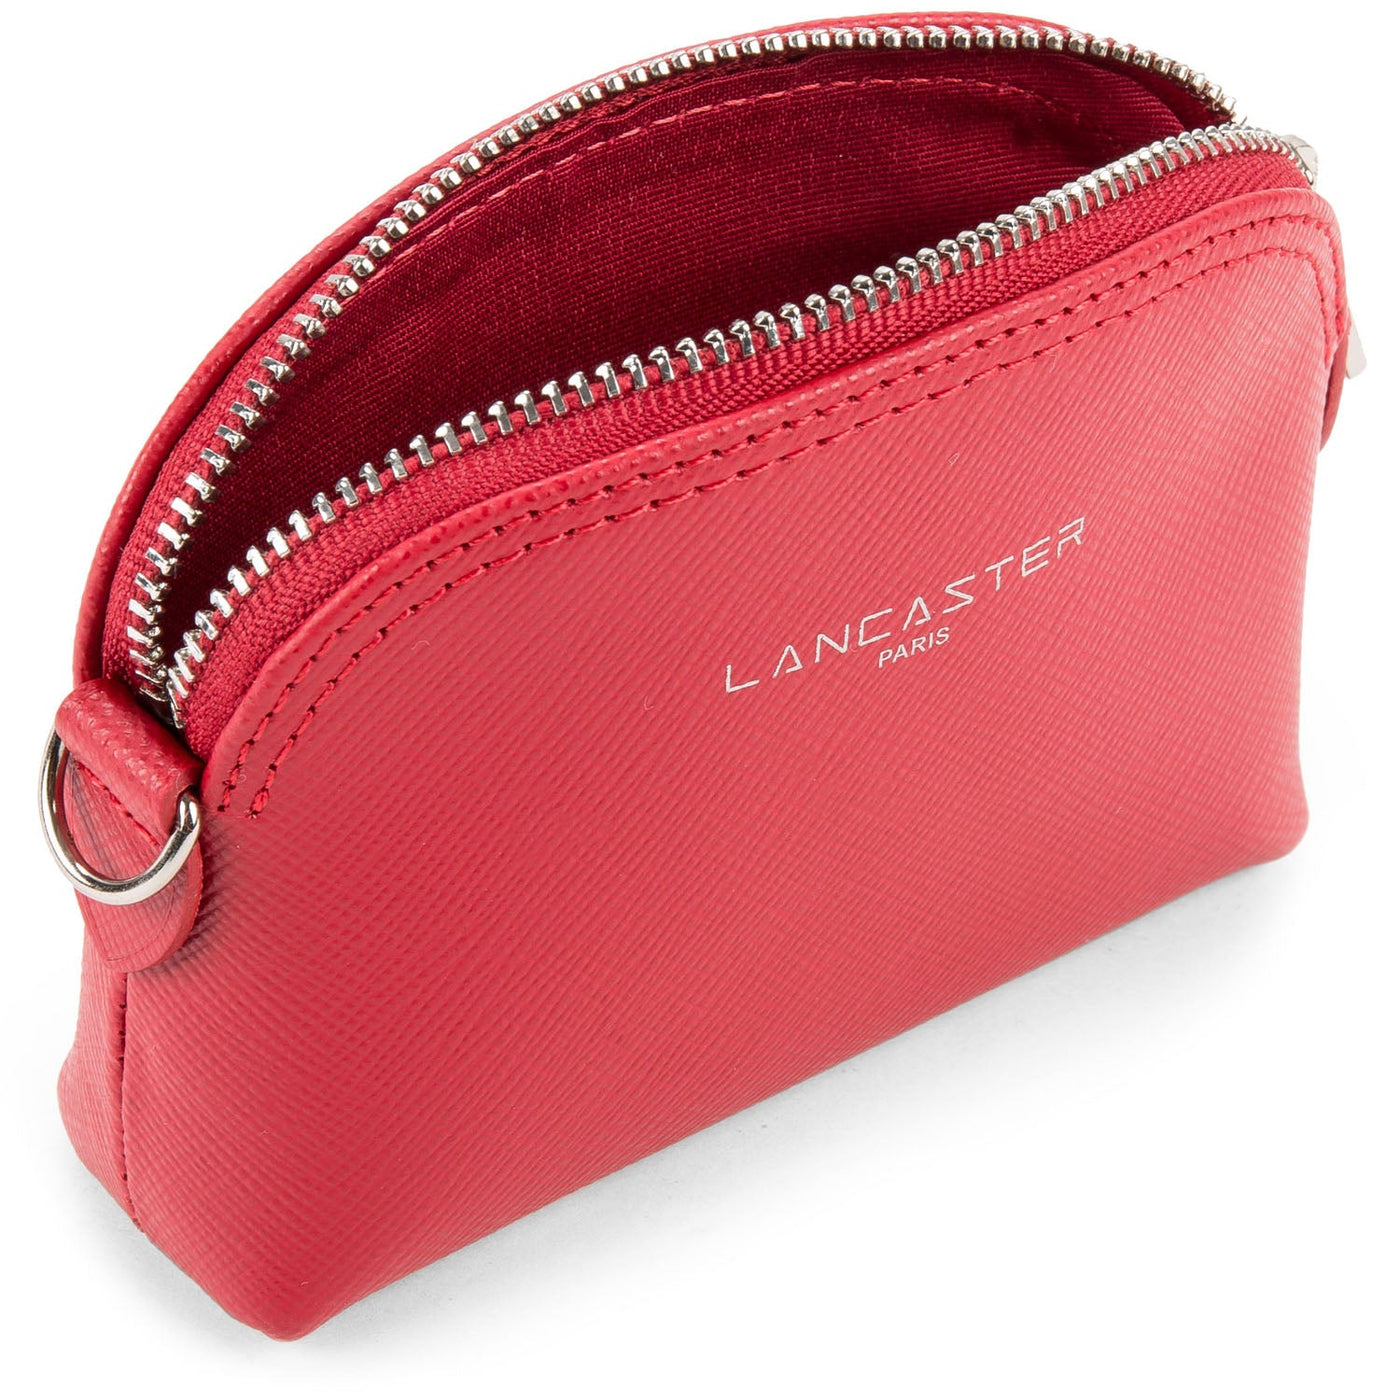 coin purse - saffiano intemporel #couleur_rouge